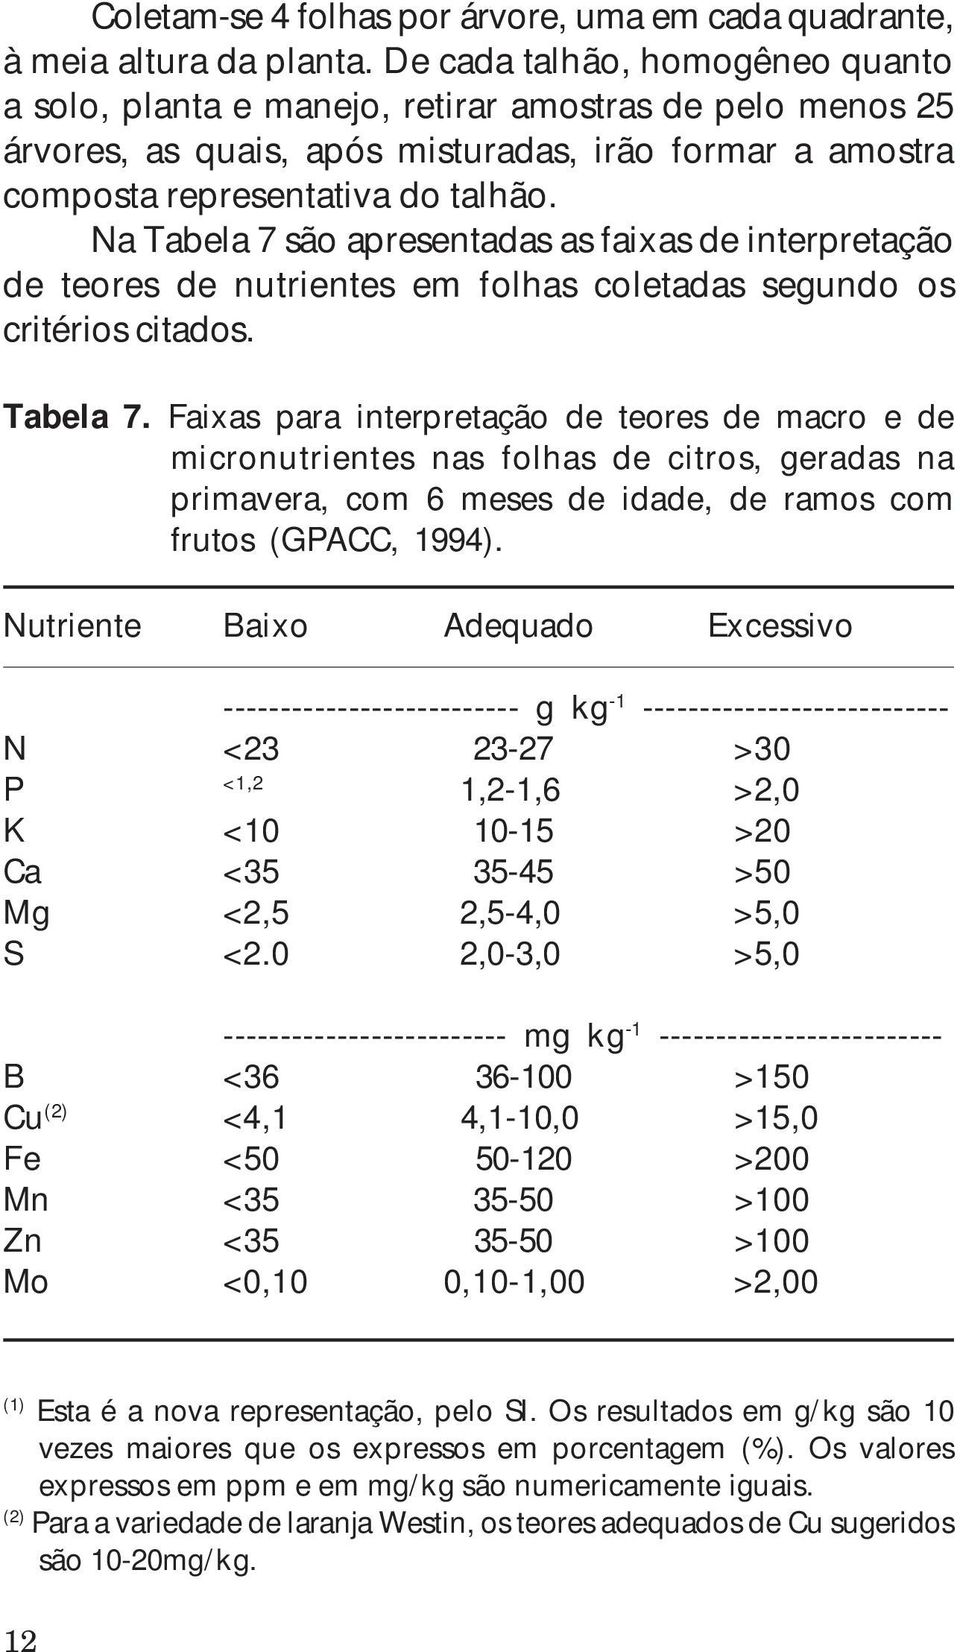 Na Tabela 7 são apresentadas as faixas de interpretação de teores de nutrientes em folhas coletadas segundo os critérios citados. Tabela 7. Faixas para interpretação de teores de macro e de micronutrientes nas folhas de citros, geradas na primavera, com 6 meses de idade, de ramos com frutos (GPACC, 1994).